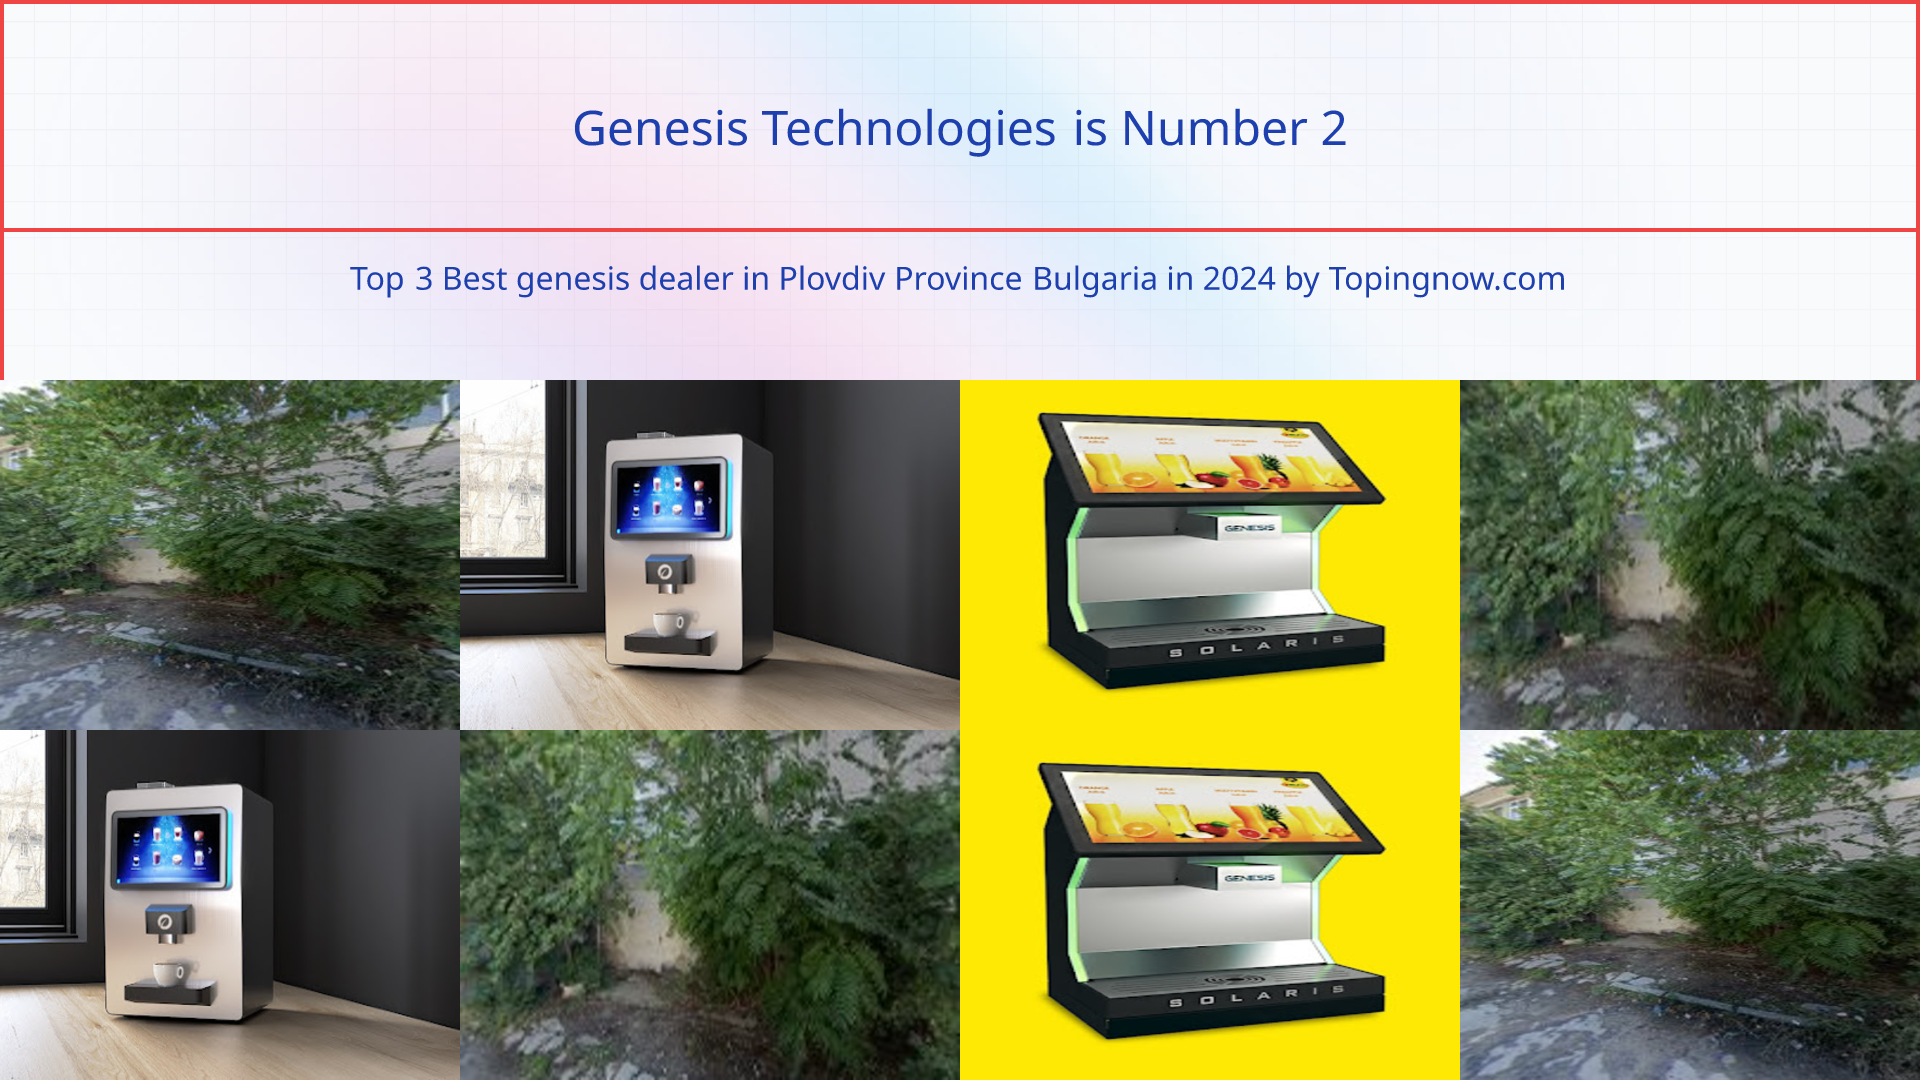 Genesis Technologies: Top 3 Best genesis dealer in Plovdiv Province Bulgaria in 2024